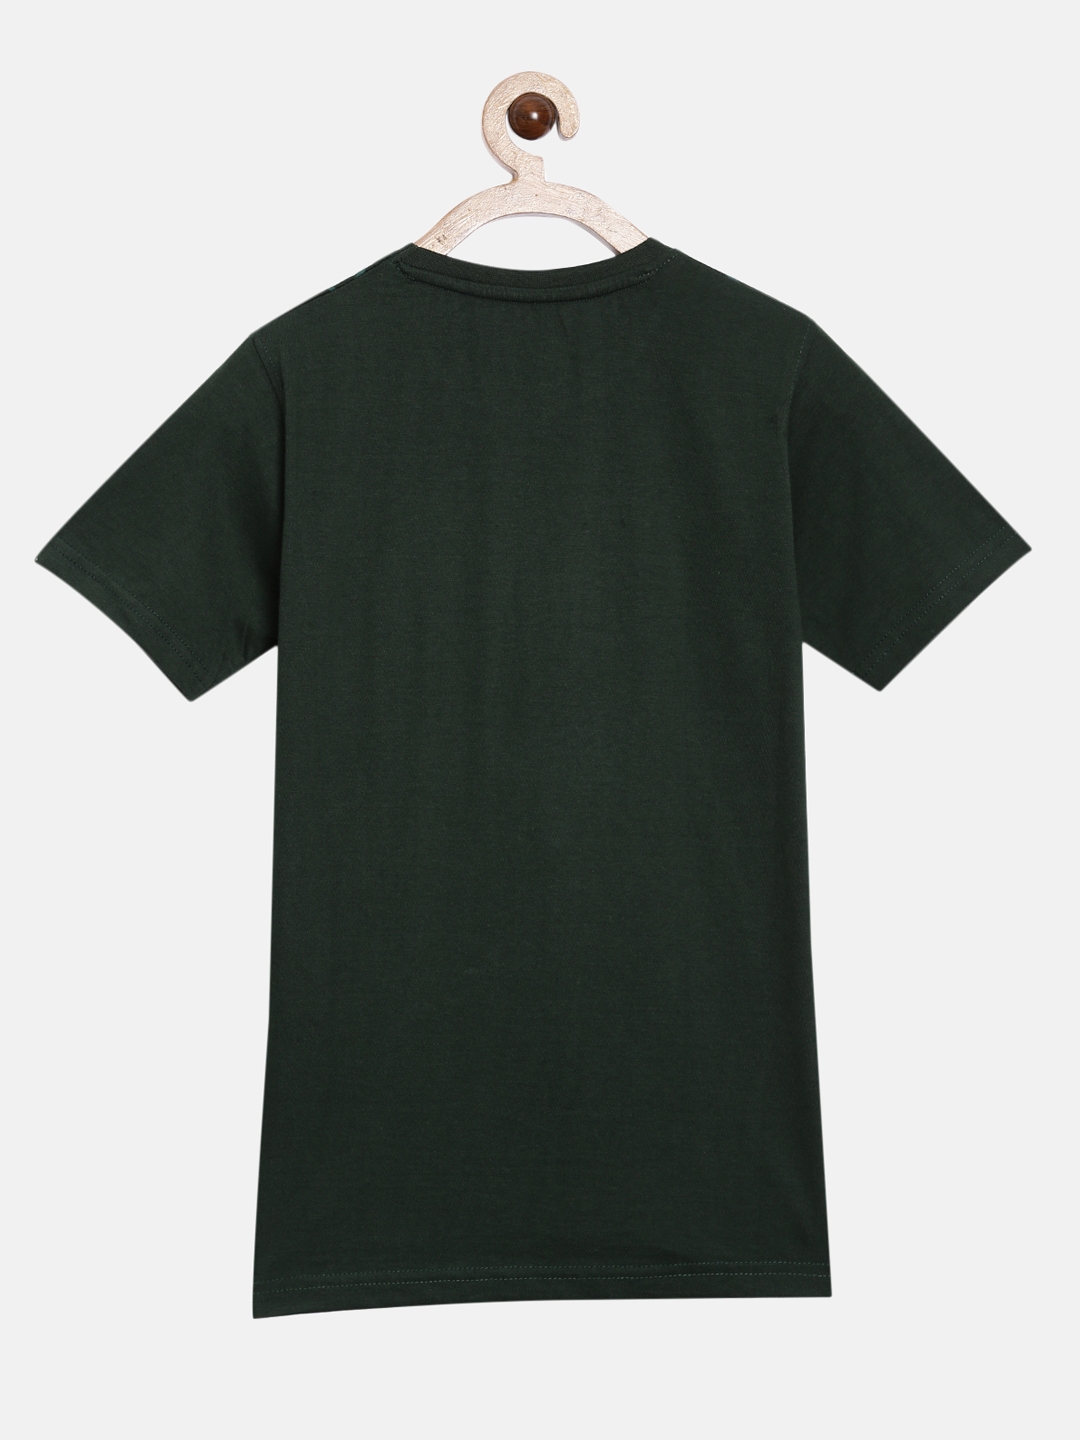 Peejas 100% Cotton Boys  Printed Round Neck Short Sleeves Tshirts